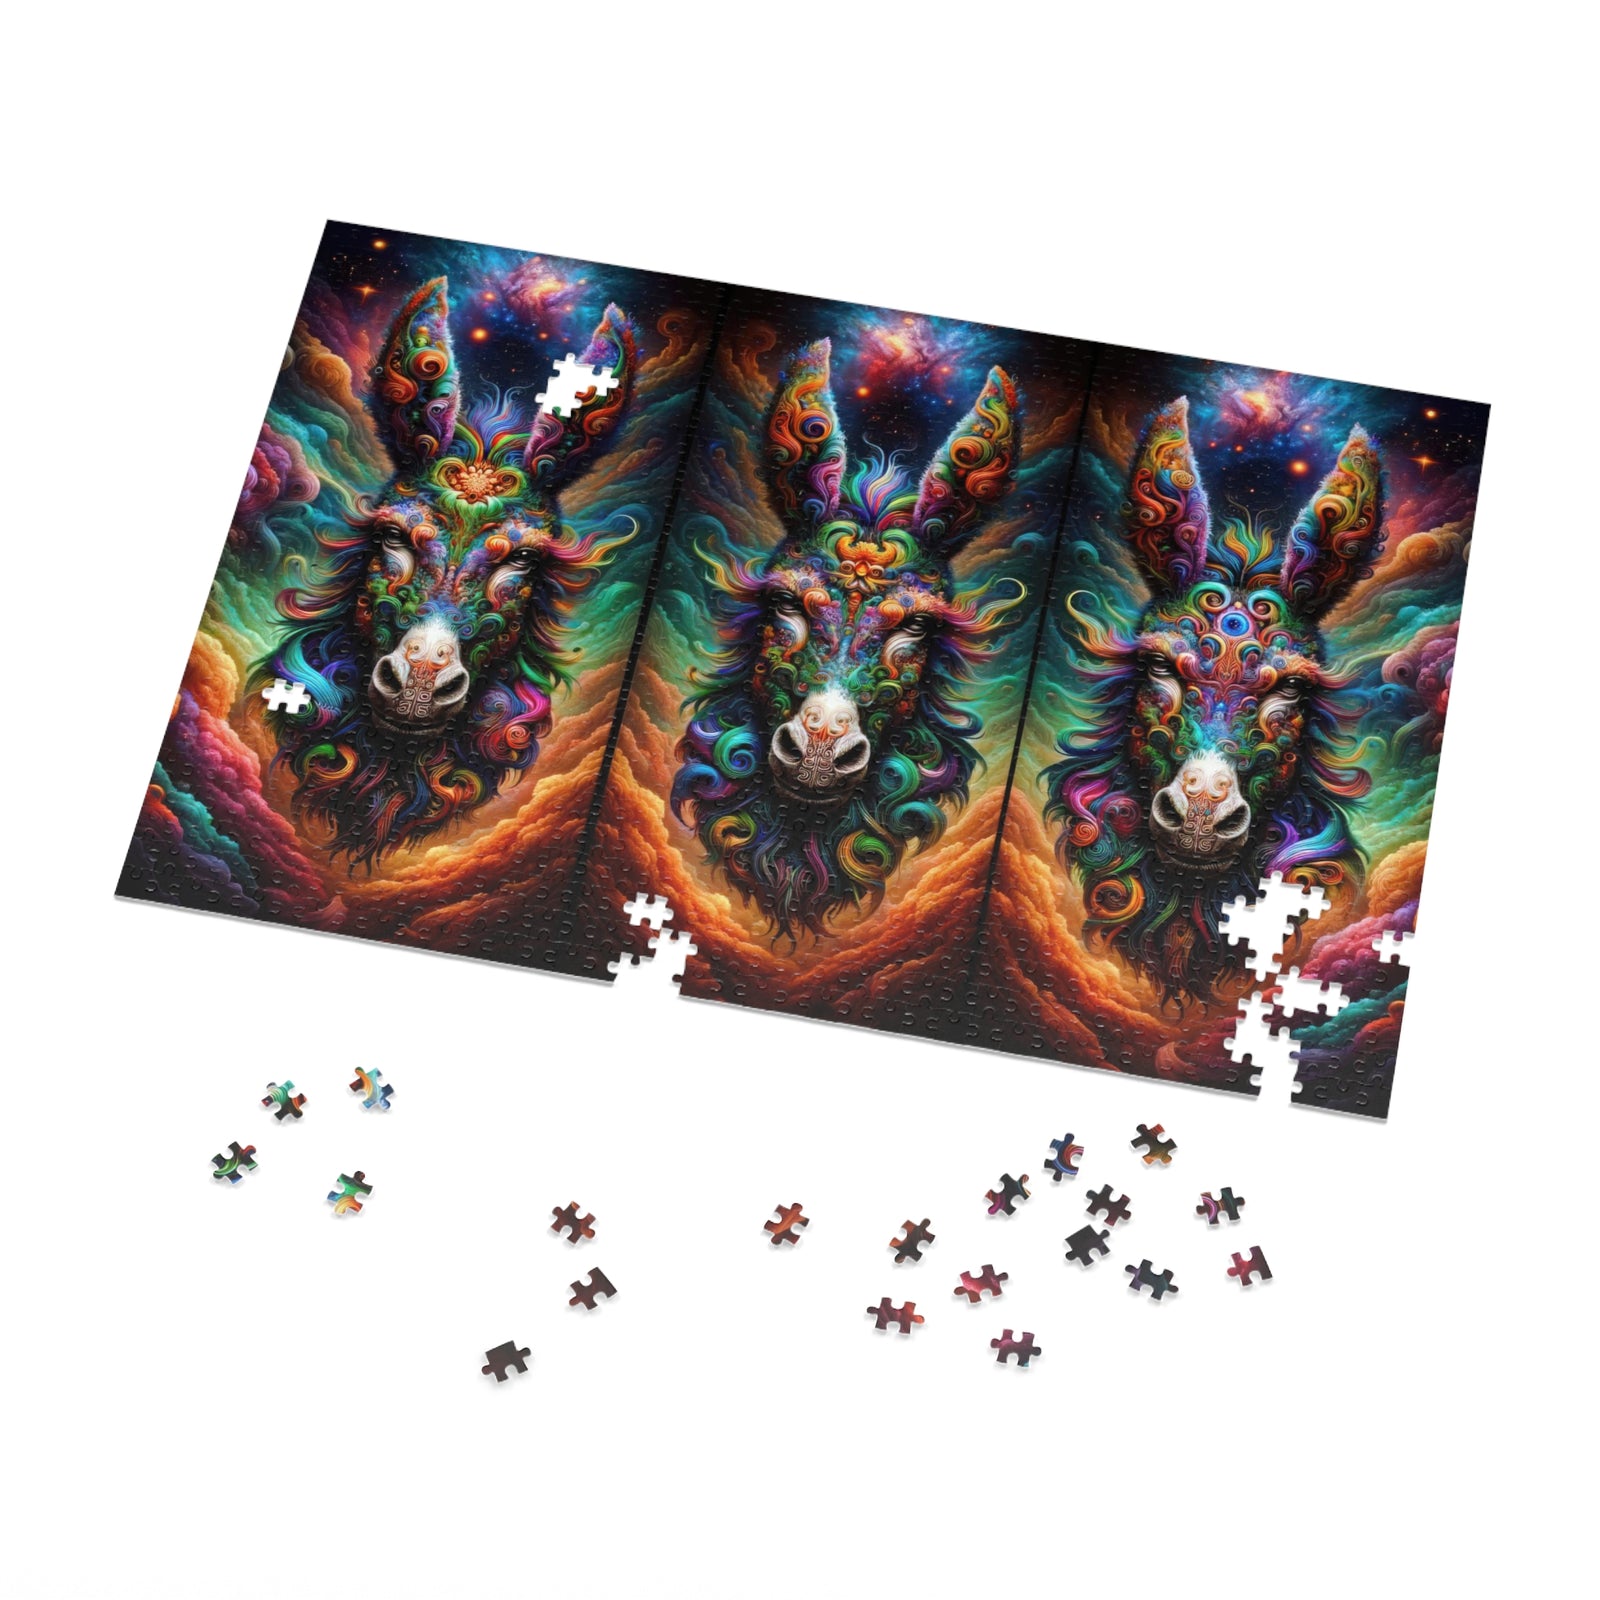 Galactic Donkey Trivision Jigsaw Puzzle